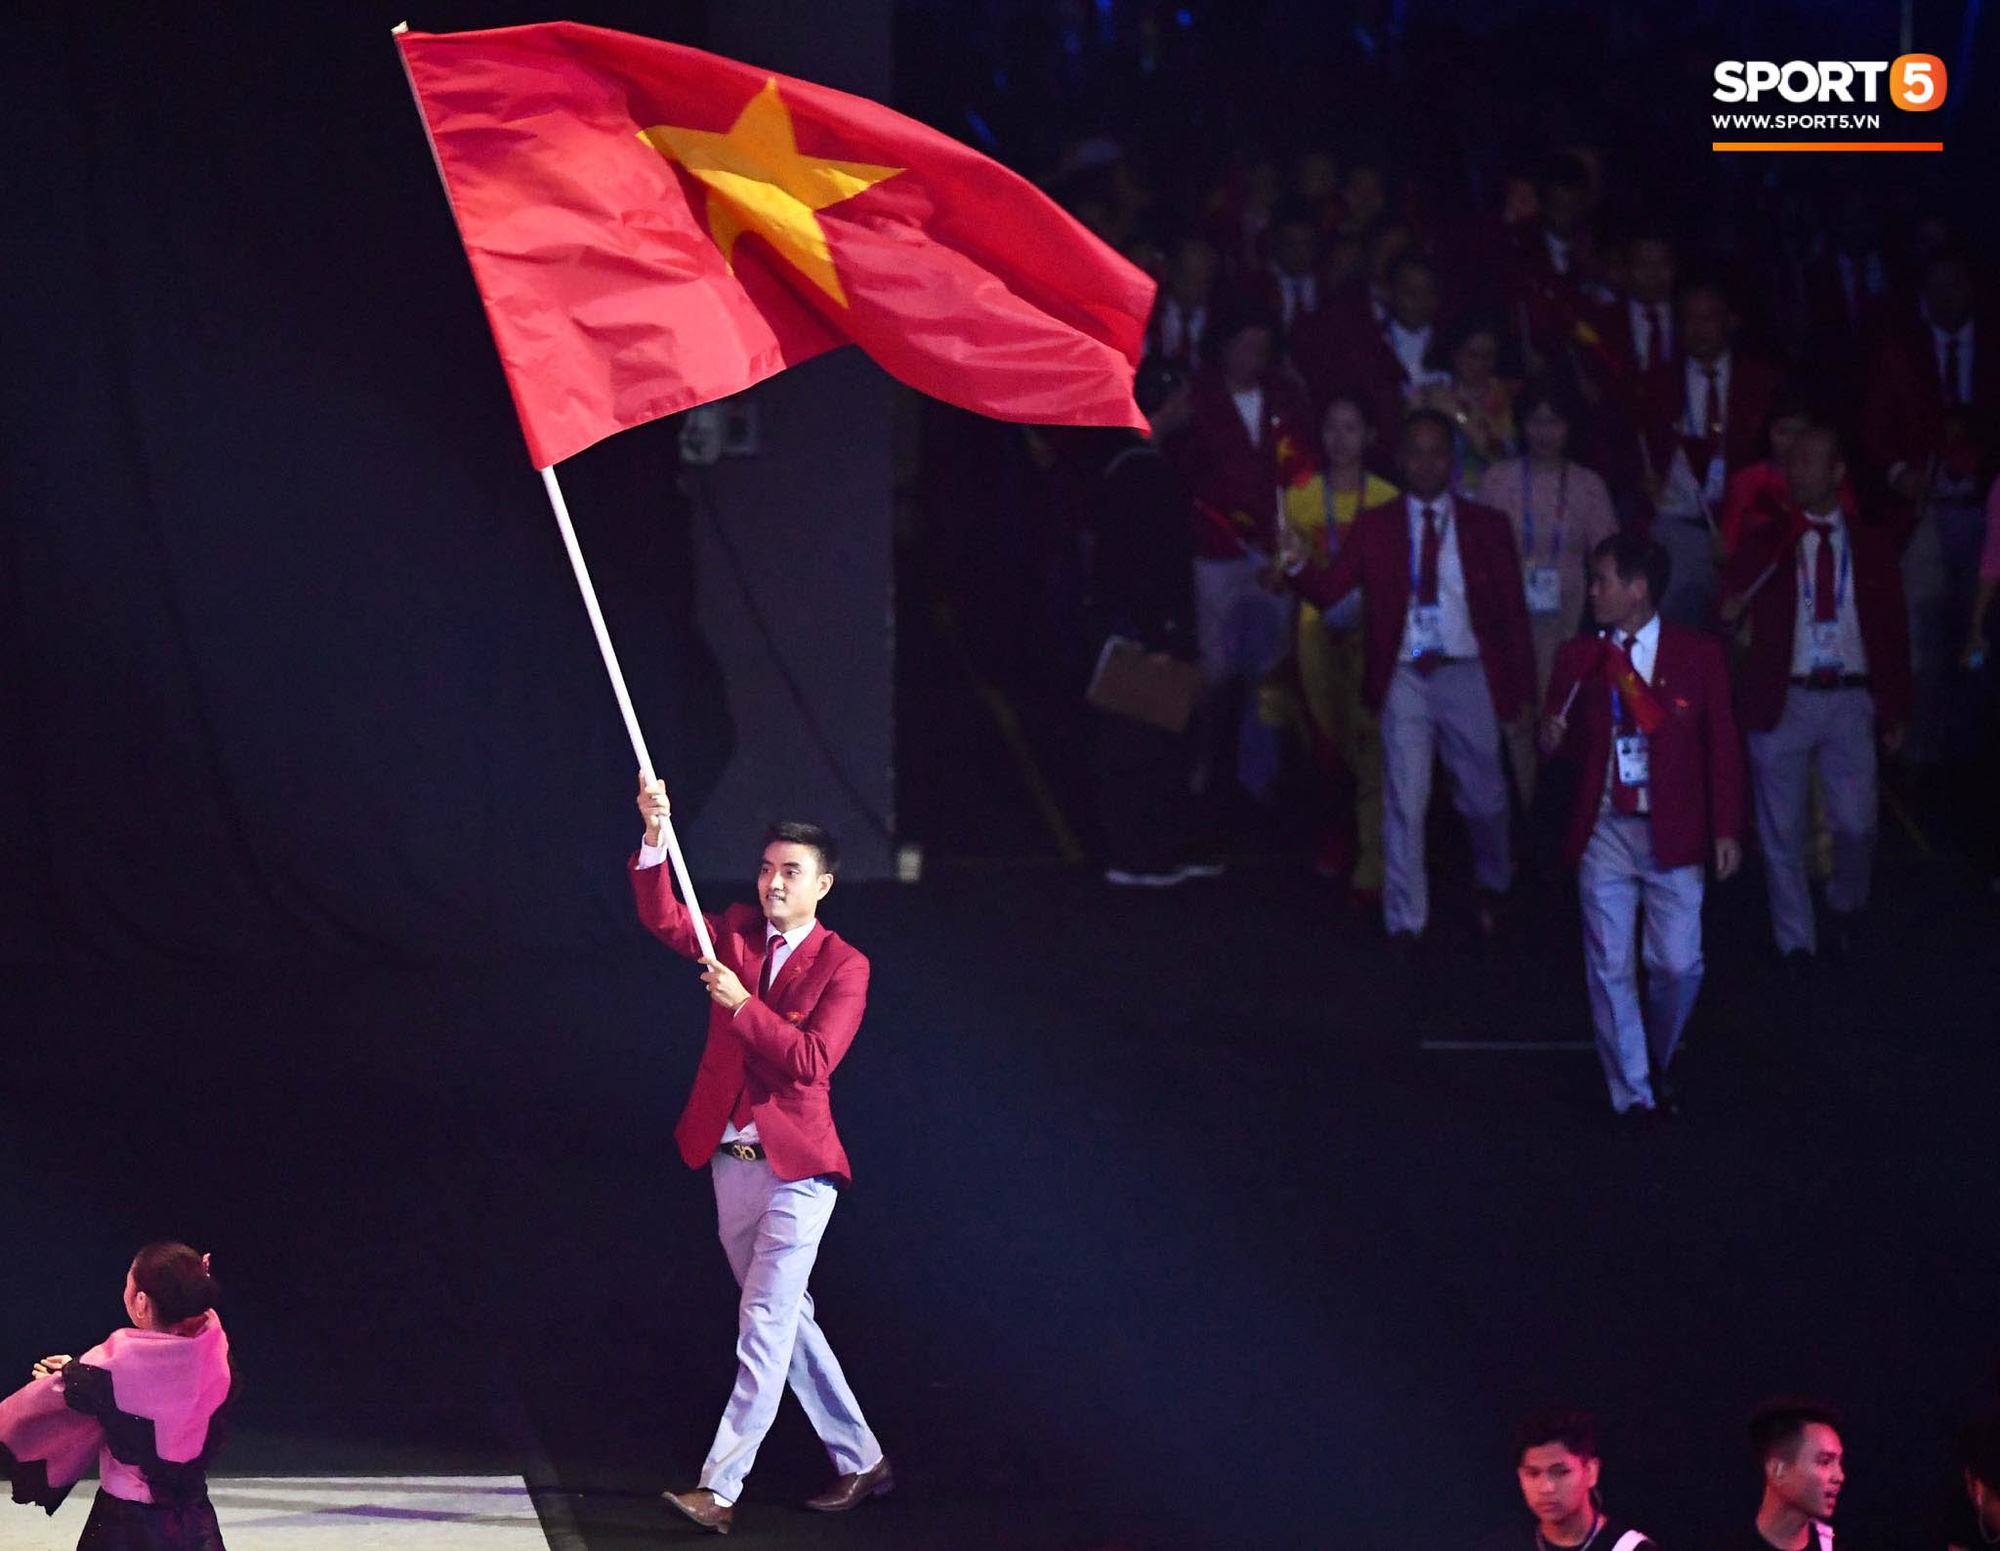 Đây là hot boy cầm lá cờ Việt Nam năm 2024, cùng đón xem hình ảnh của anh chàng này. Những người yêu nước sẽ cảm thấy tự hào và phấn chấn khi thấy thể hiện của hot boy này. Anh ta là một hình mẫu tuyệt vời của sự yêu nước và đam mê với cờ đỏ sao vàng.